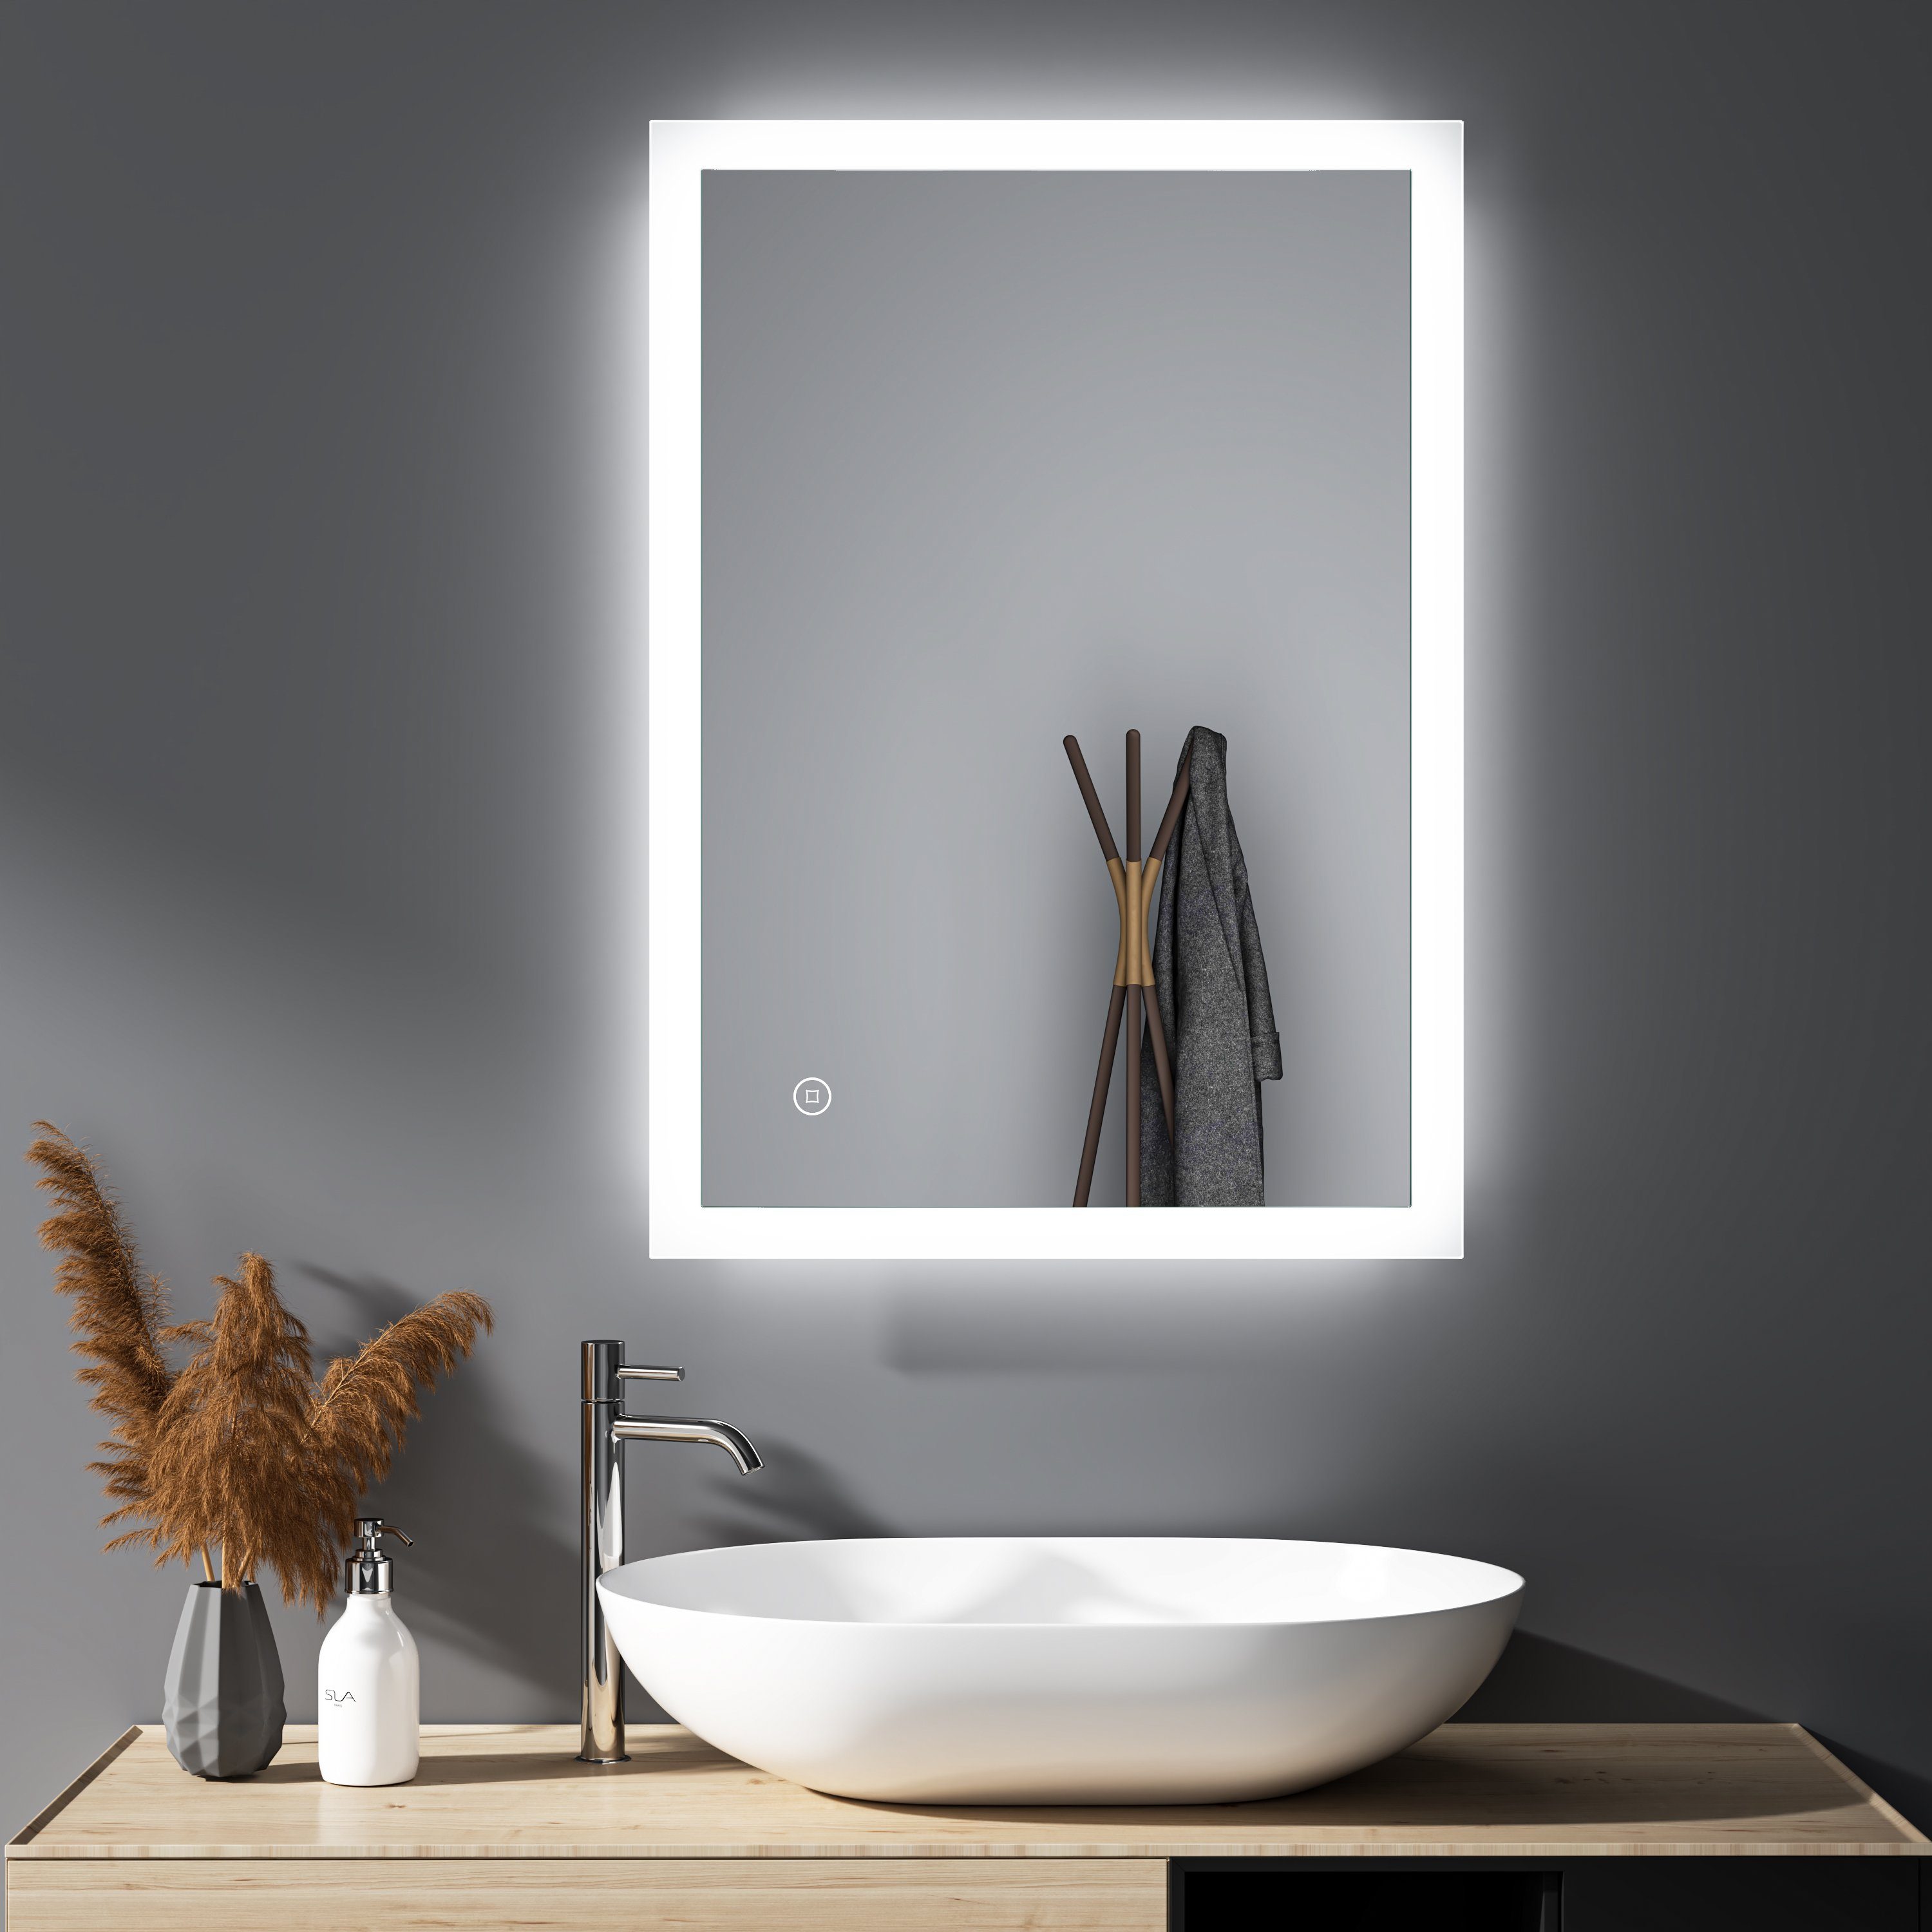 WDWRITTI Badspiegel Wandspiegel Badezimmerspiegel Led Spiegel Bad mit Beleuchtung Touch (Spiegel Led badezimmer, Lichtspiegel, Speicherfunktion, 3Lichtfarben, Helligkeit einstellbar), energiesparender, IP44